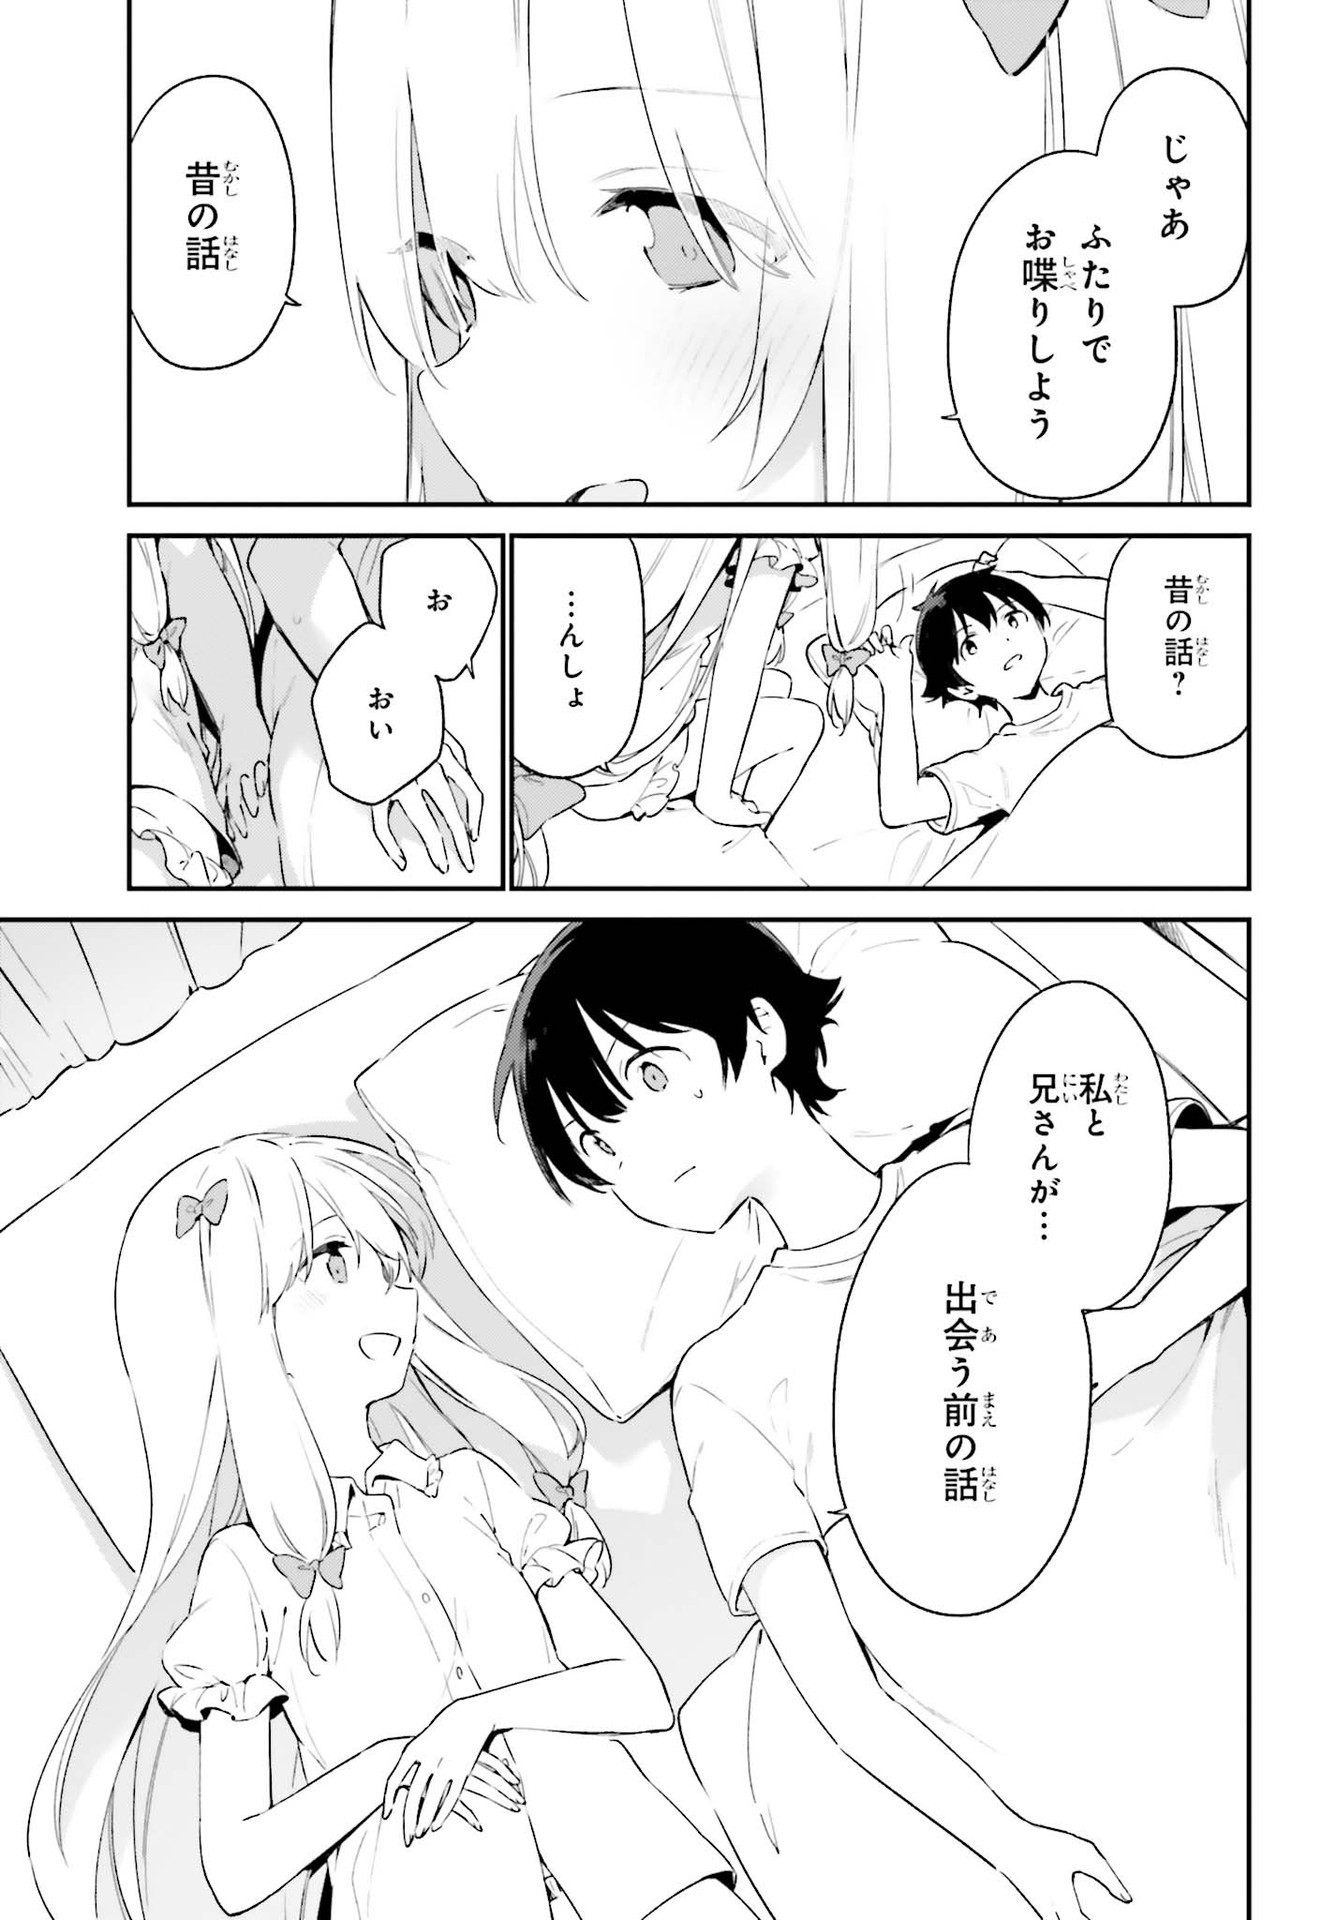 Ero Manga Sensei - Chapter 77 - Page 7